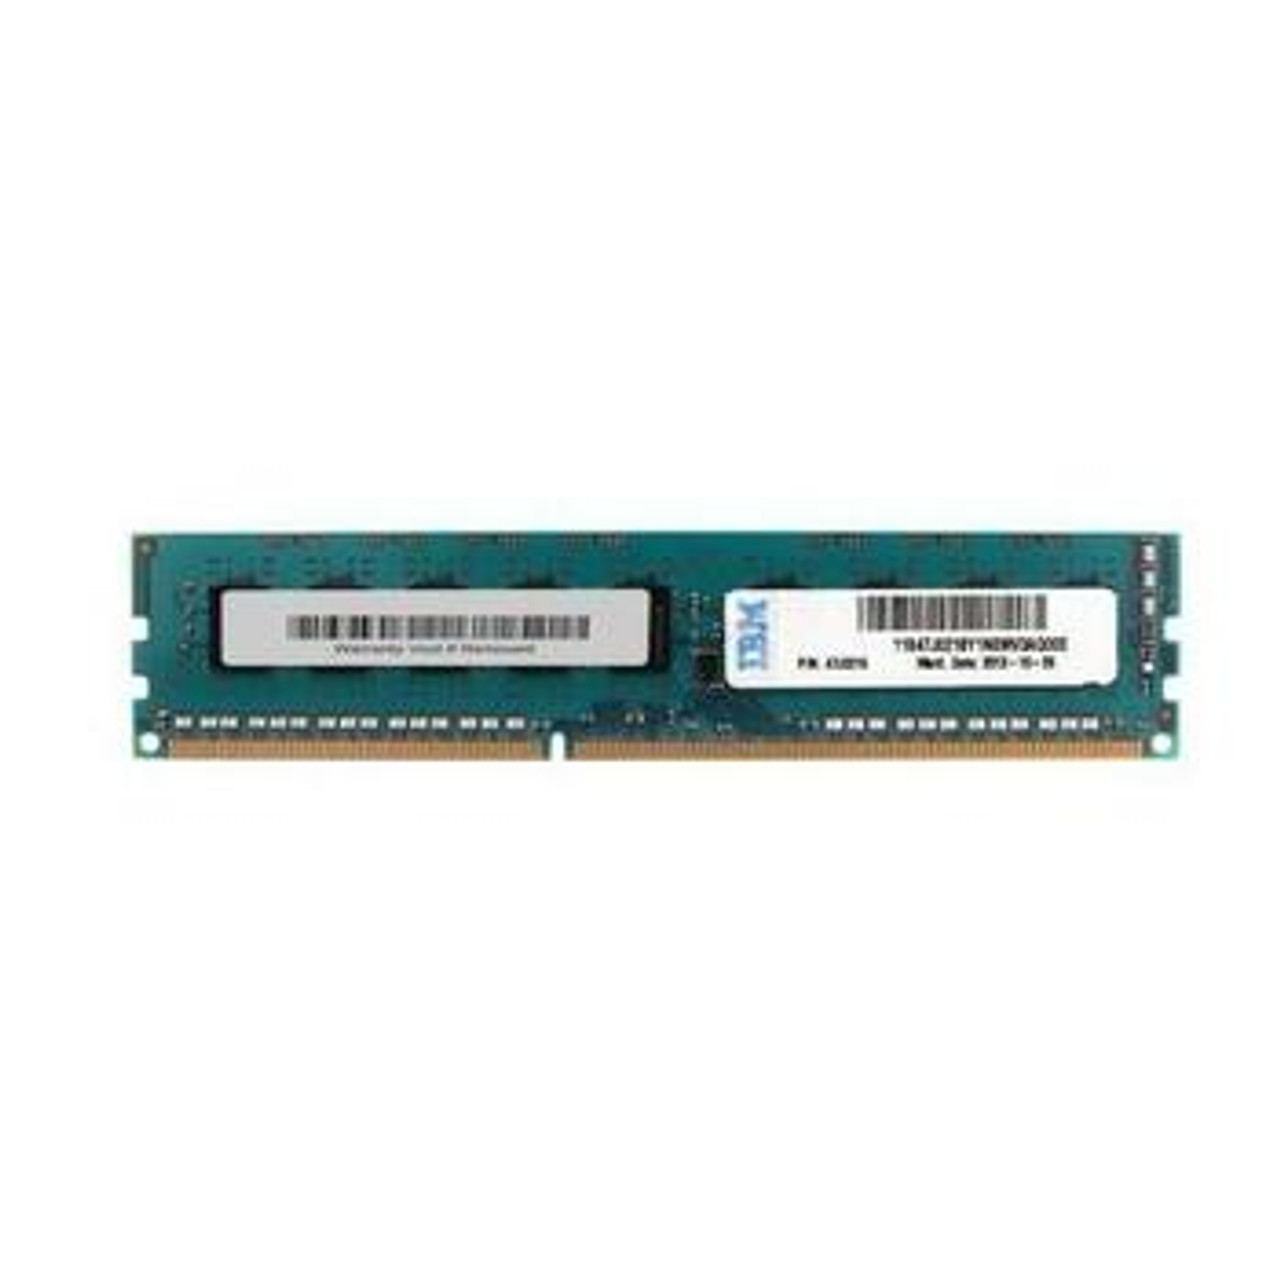 47J0216 IBM 4GB DDR3 ECC PC3-12800 1600Mhz 2Rx8 Memory